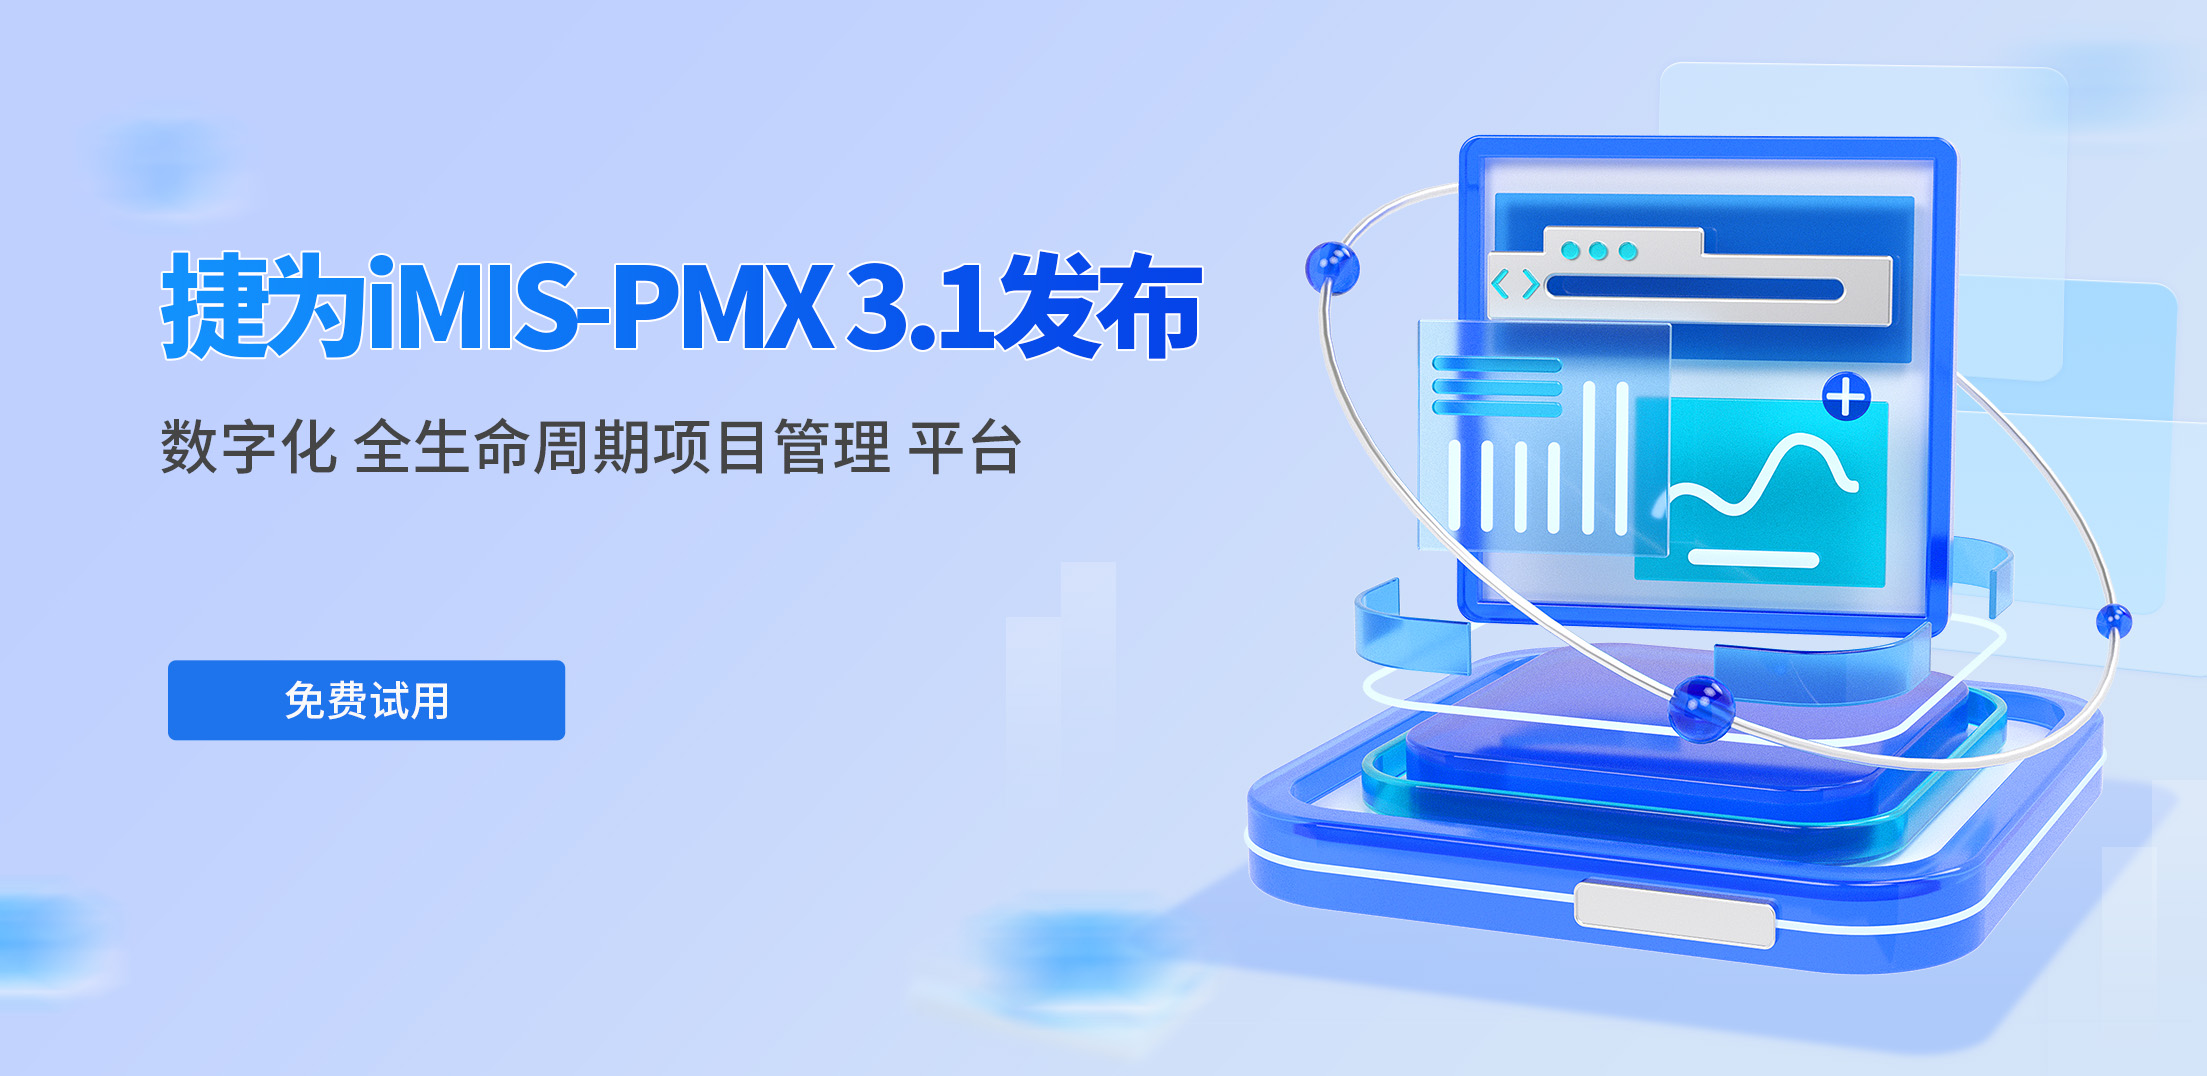 捷为iMIS-PMX系统V3.1发布